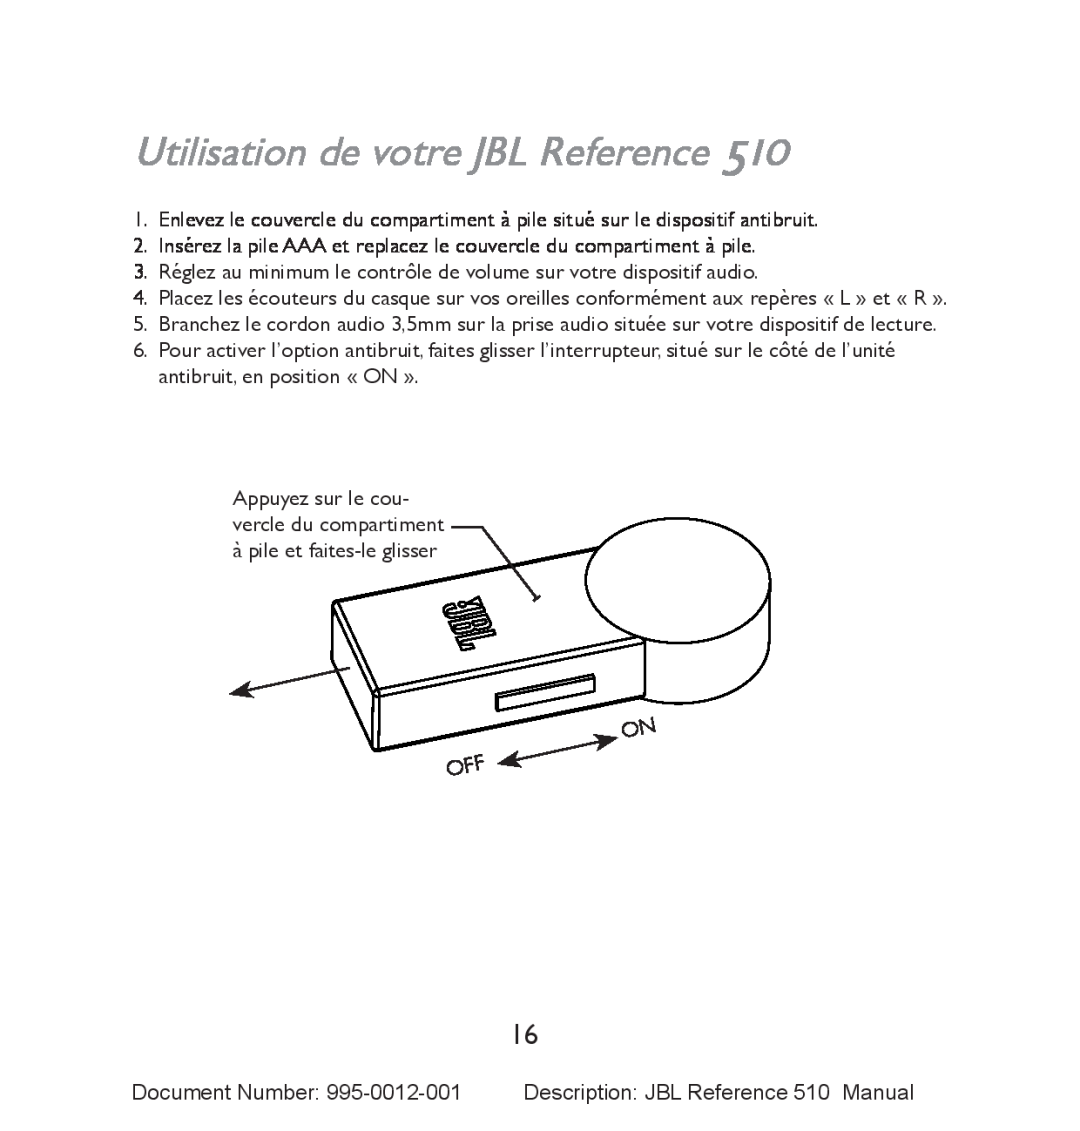 JBL 510 manual Utilisation de votre JBL Reference 